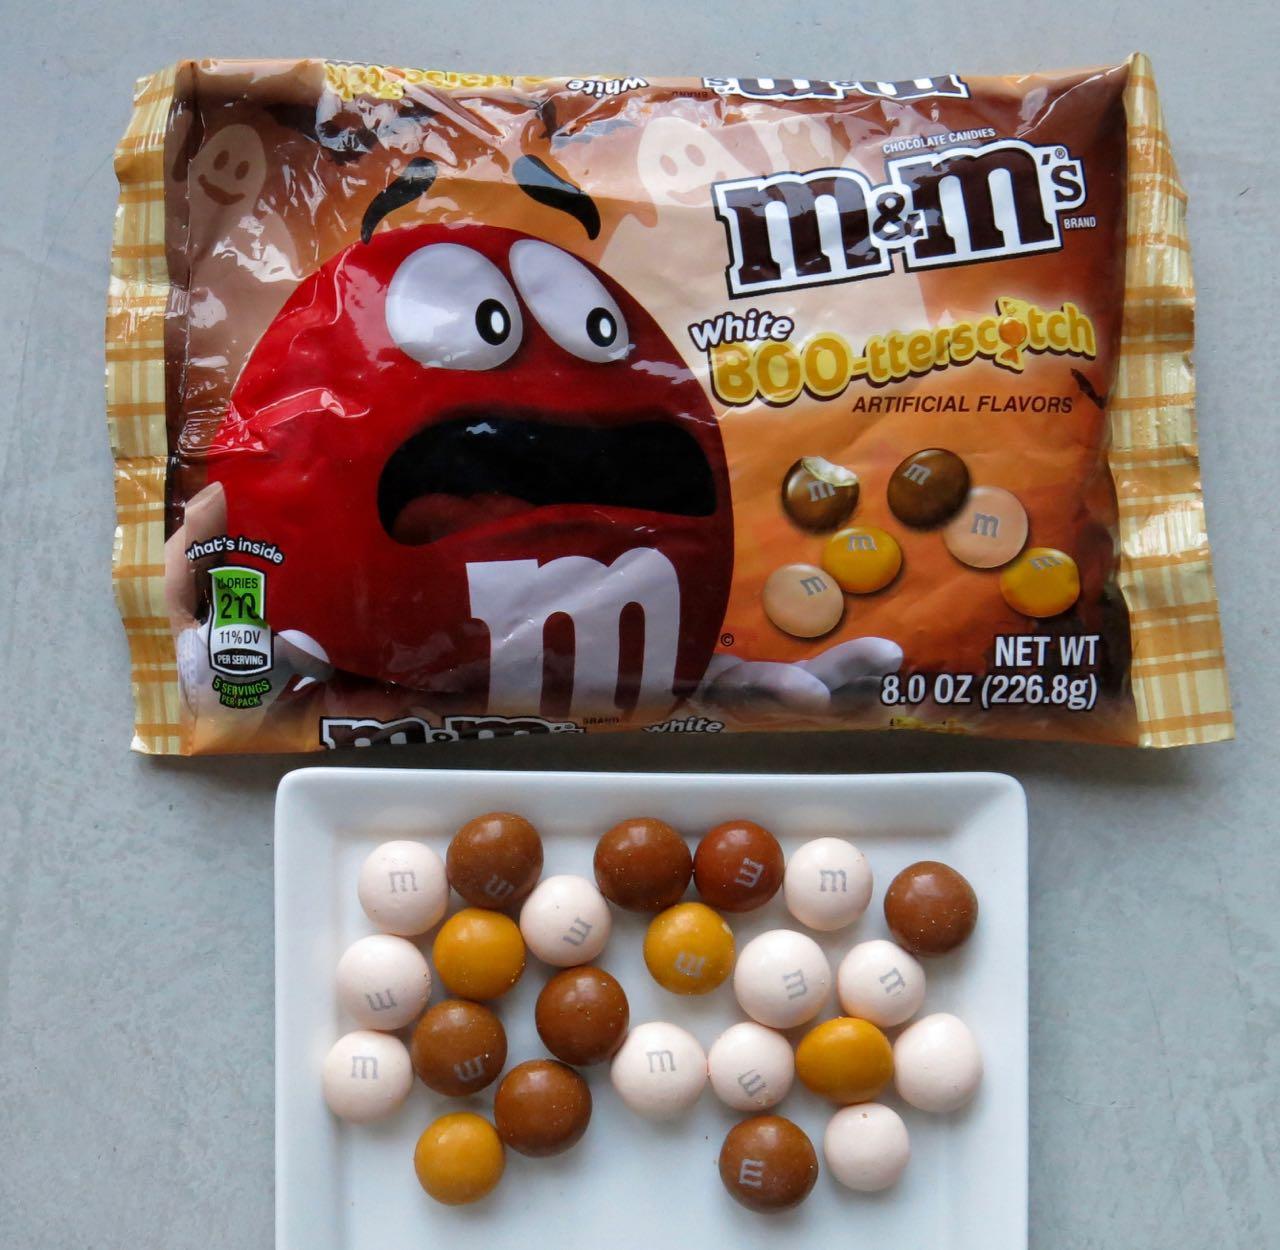 The m&m's pretzel packaging shows a nervous m&m who knows a